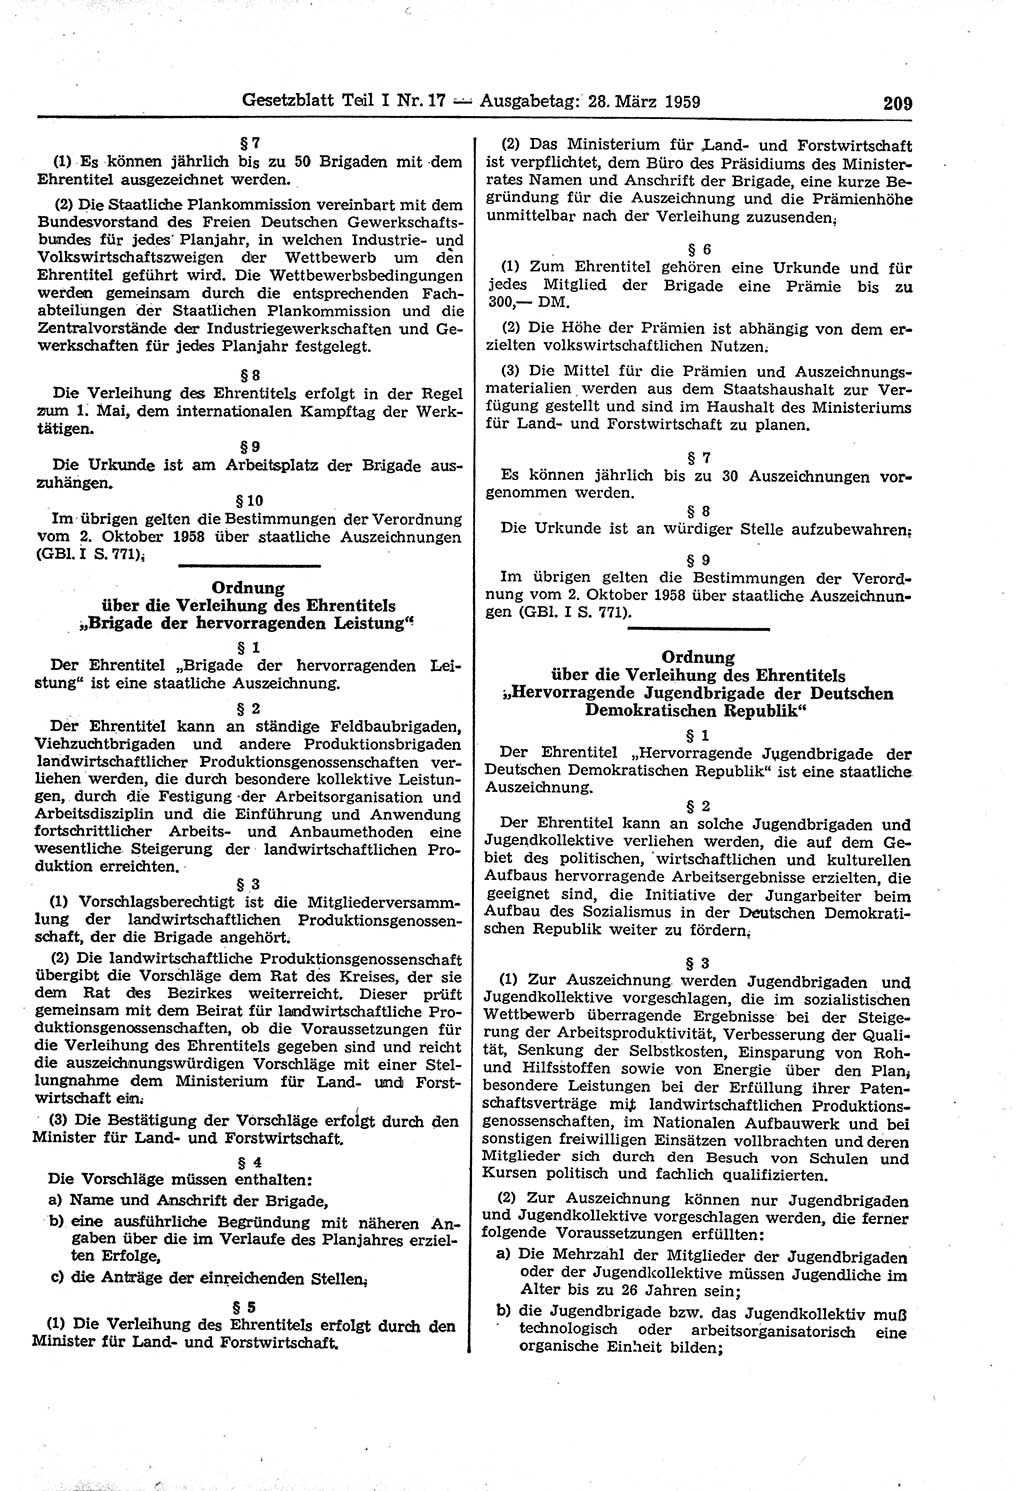 Gesetzblatt (GBl.) der Deutschen Demokratischen Republik (DDR) Teil Ⅰ 1959, Seite 209 (GBl. DDR Ⅰ 1959, S. 209)